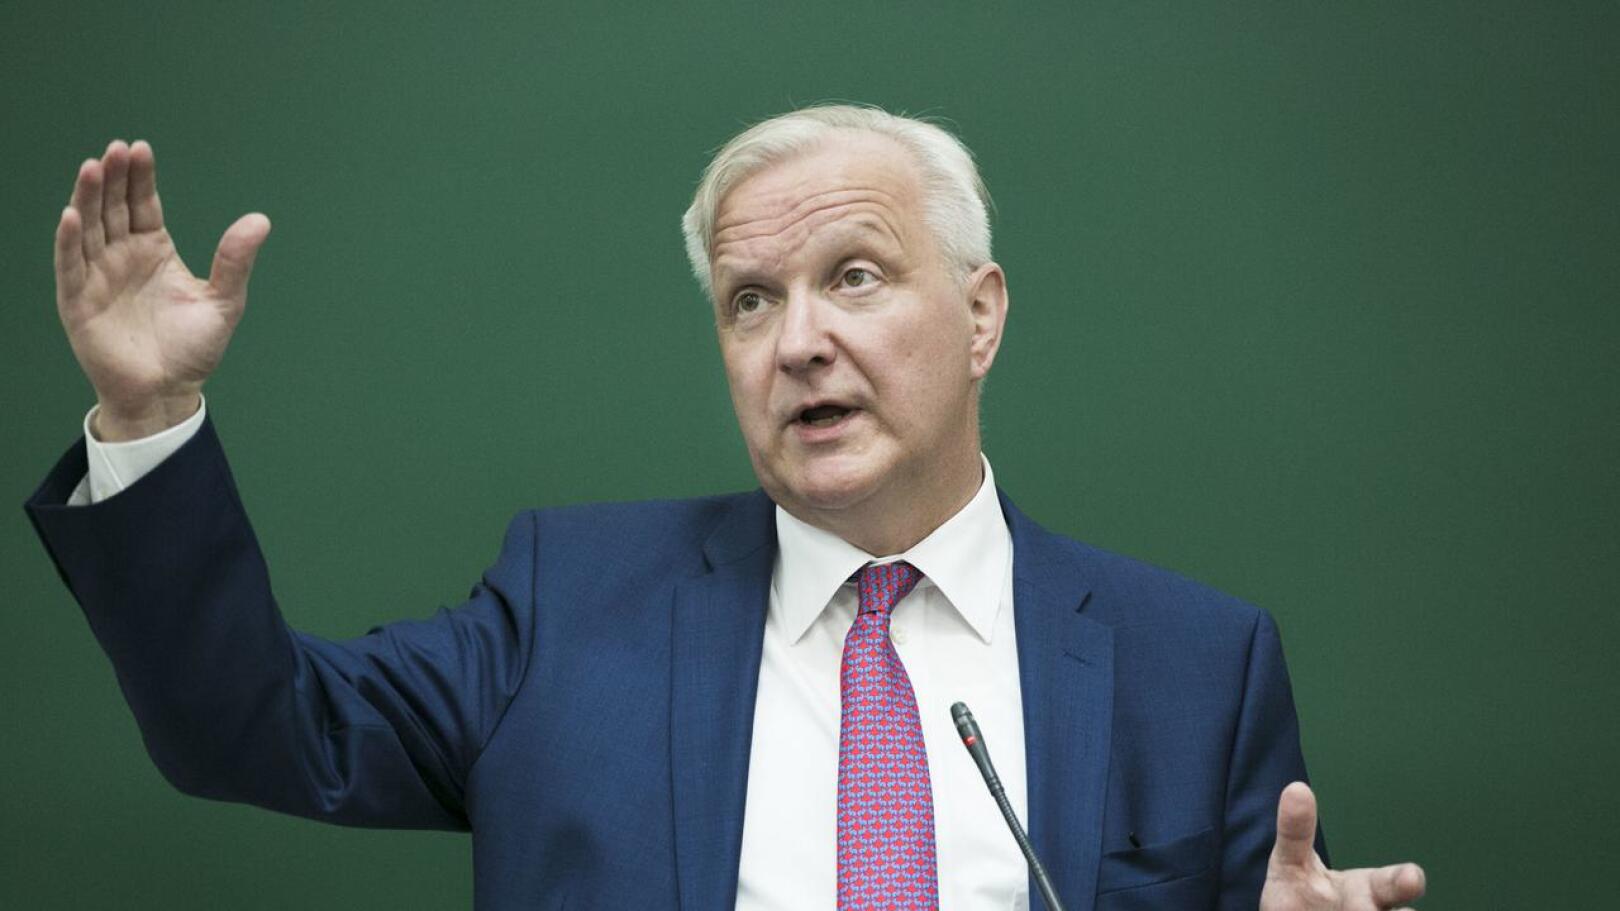 Olen pohtinut asiaa. En sulje pois presidenttiehdokkuutta, Olli Rehn vastasi presidenttiehdokkuuteensa liittyvään kysymykseen Ylen ykkösaamussa.